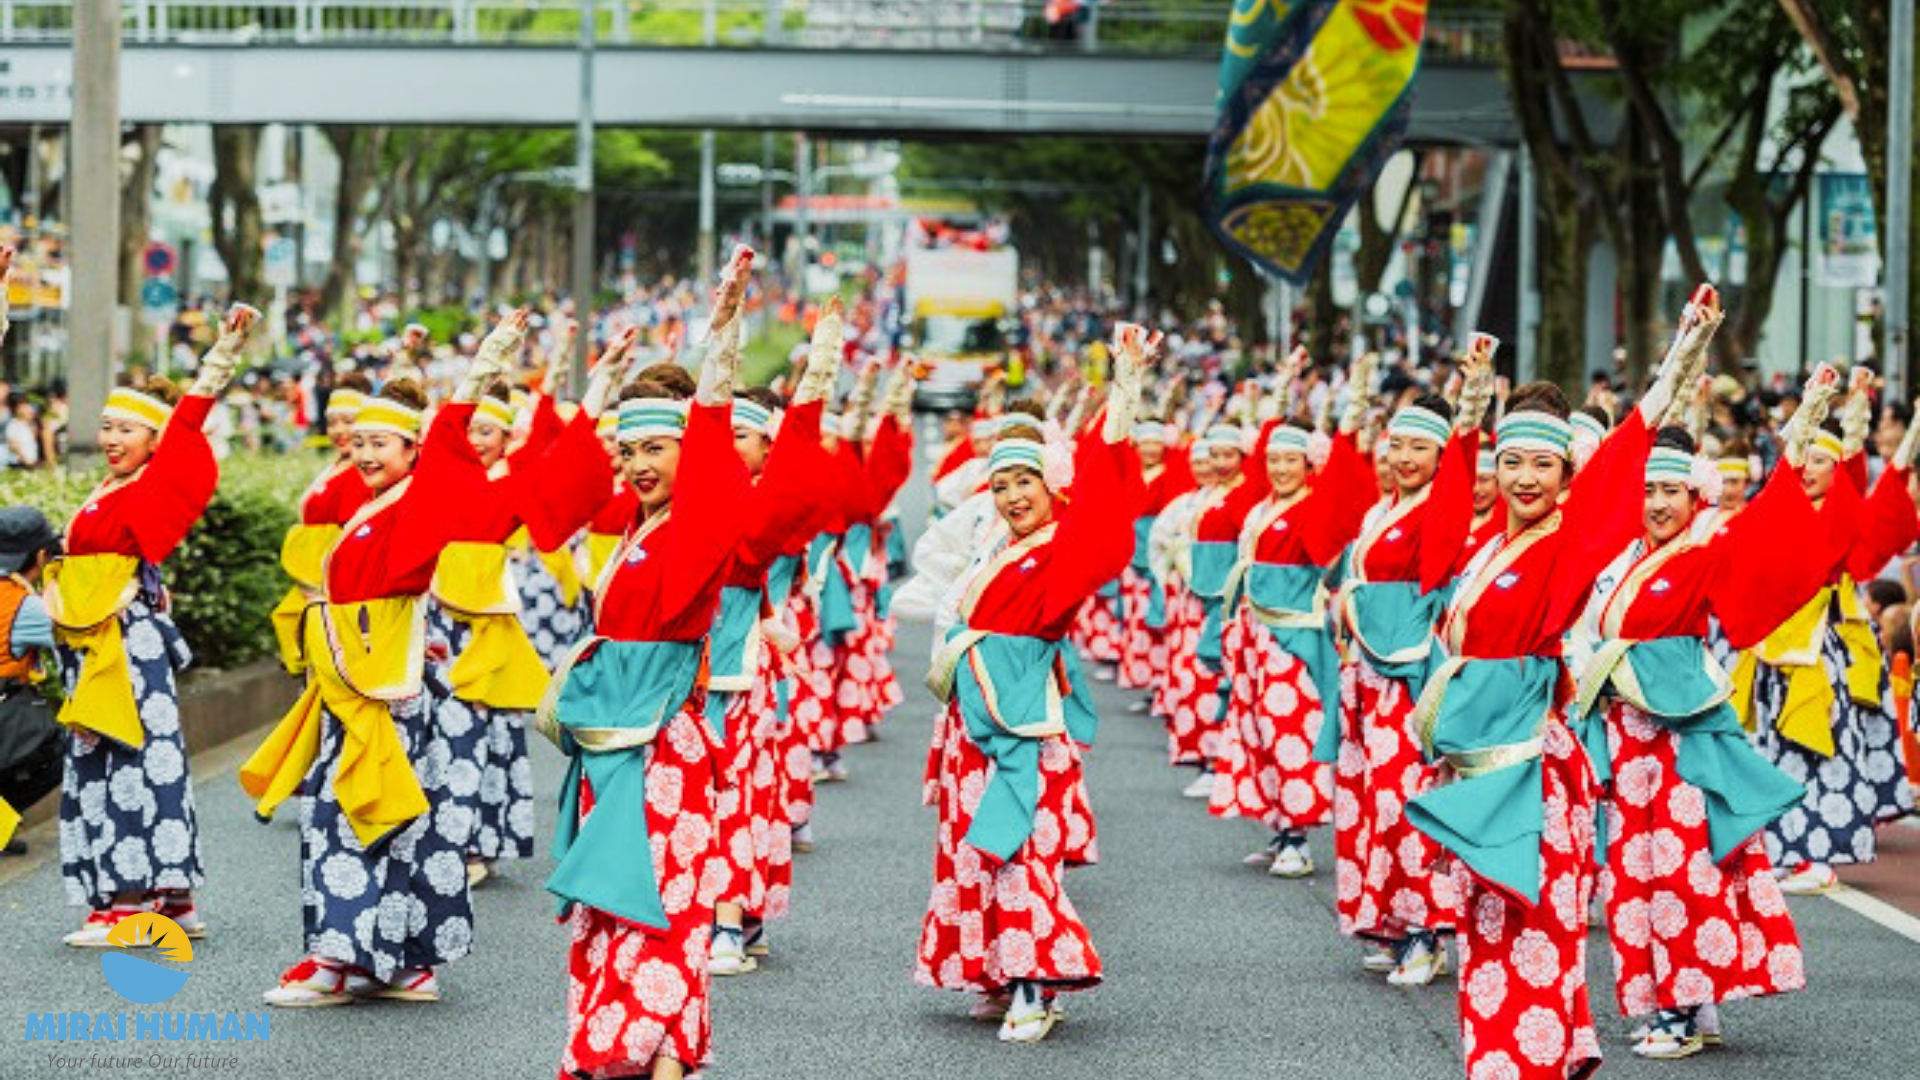 Khoảng 4.000 người tham dự khai mạc Lễ hội Hokkaido tại Hạ Long năm 2023